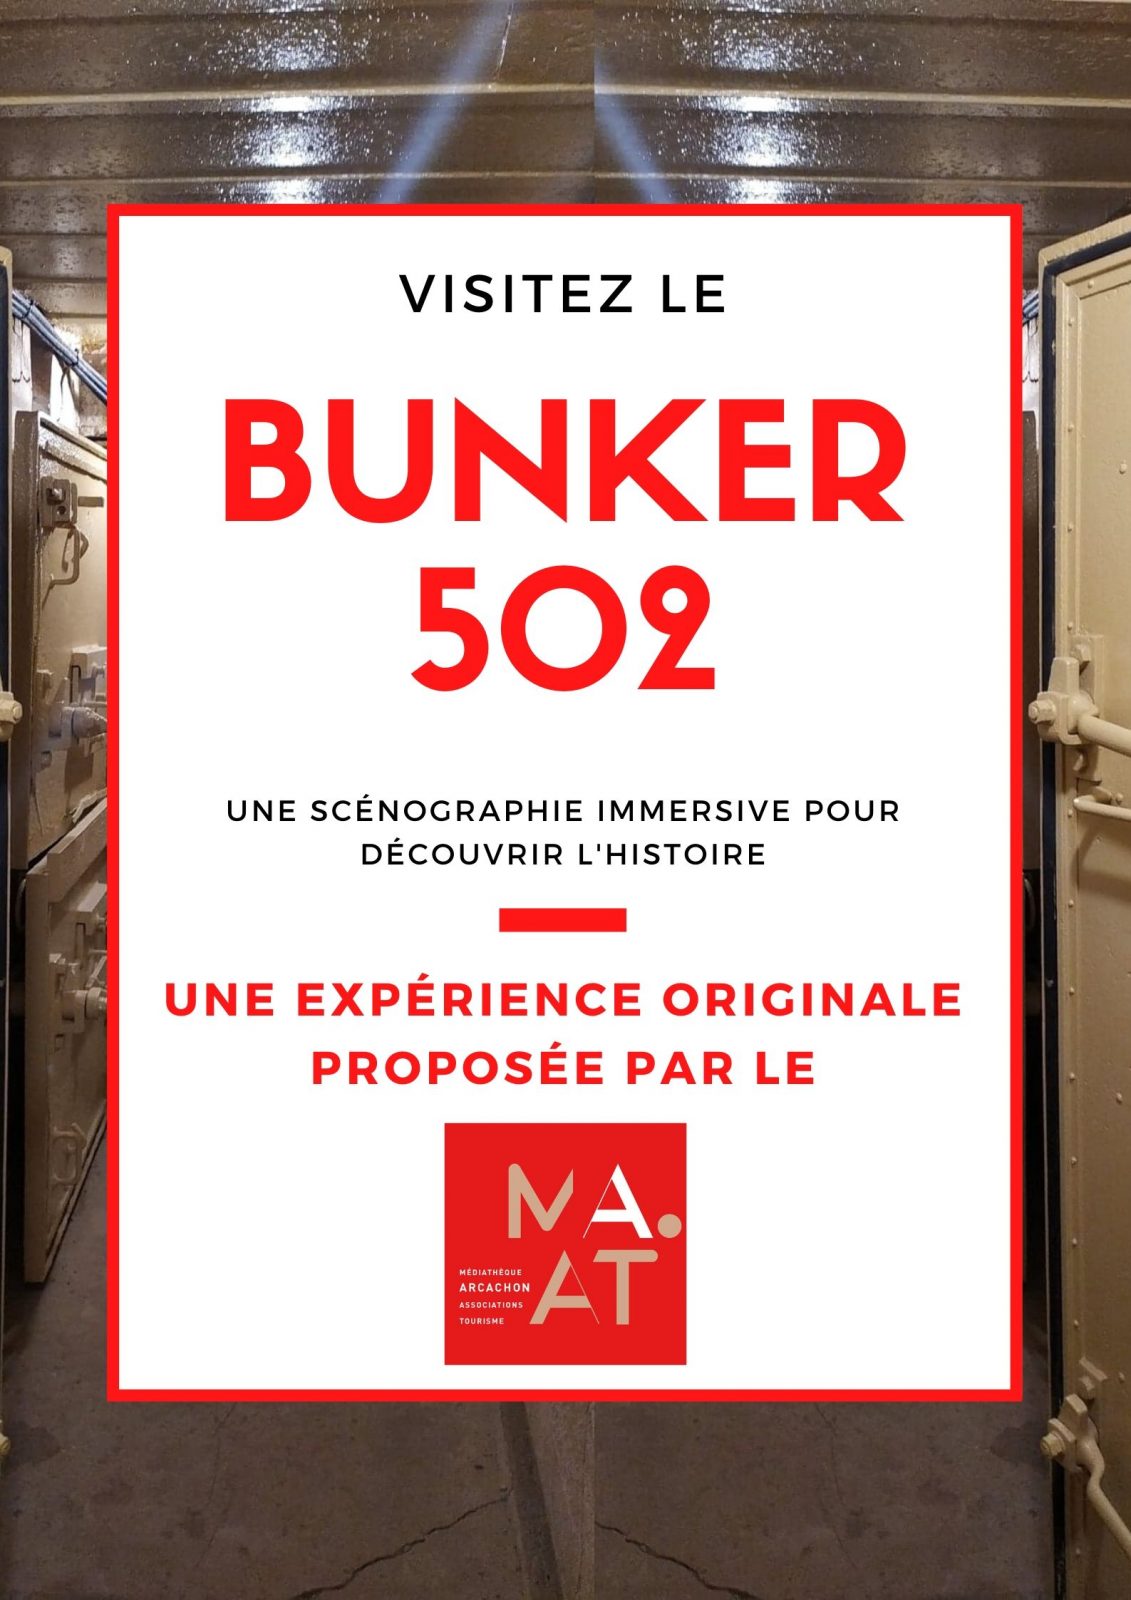 BUNKER502